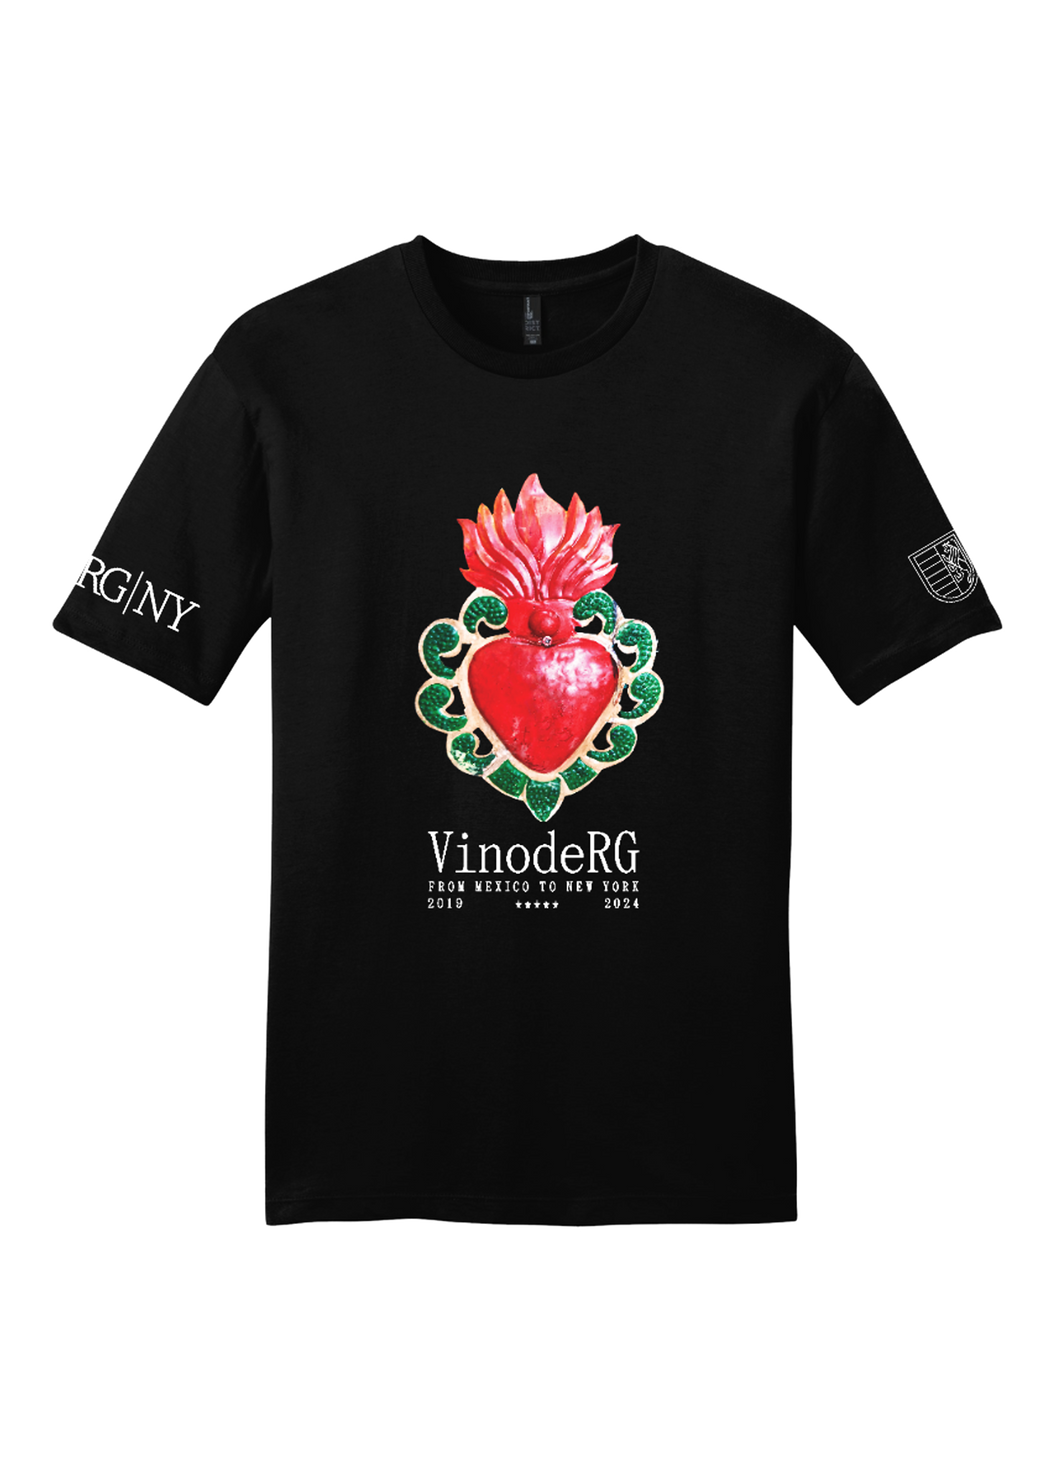 VinodeRG: Sagrada Corazon de RG T-Shirt